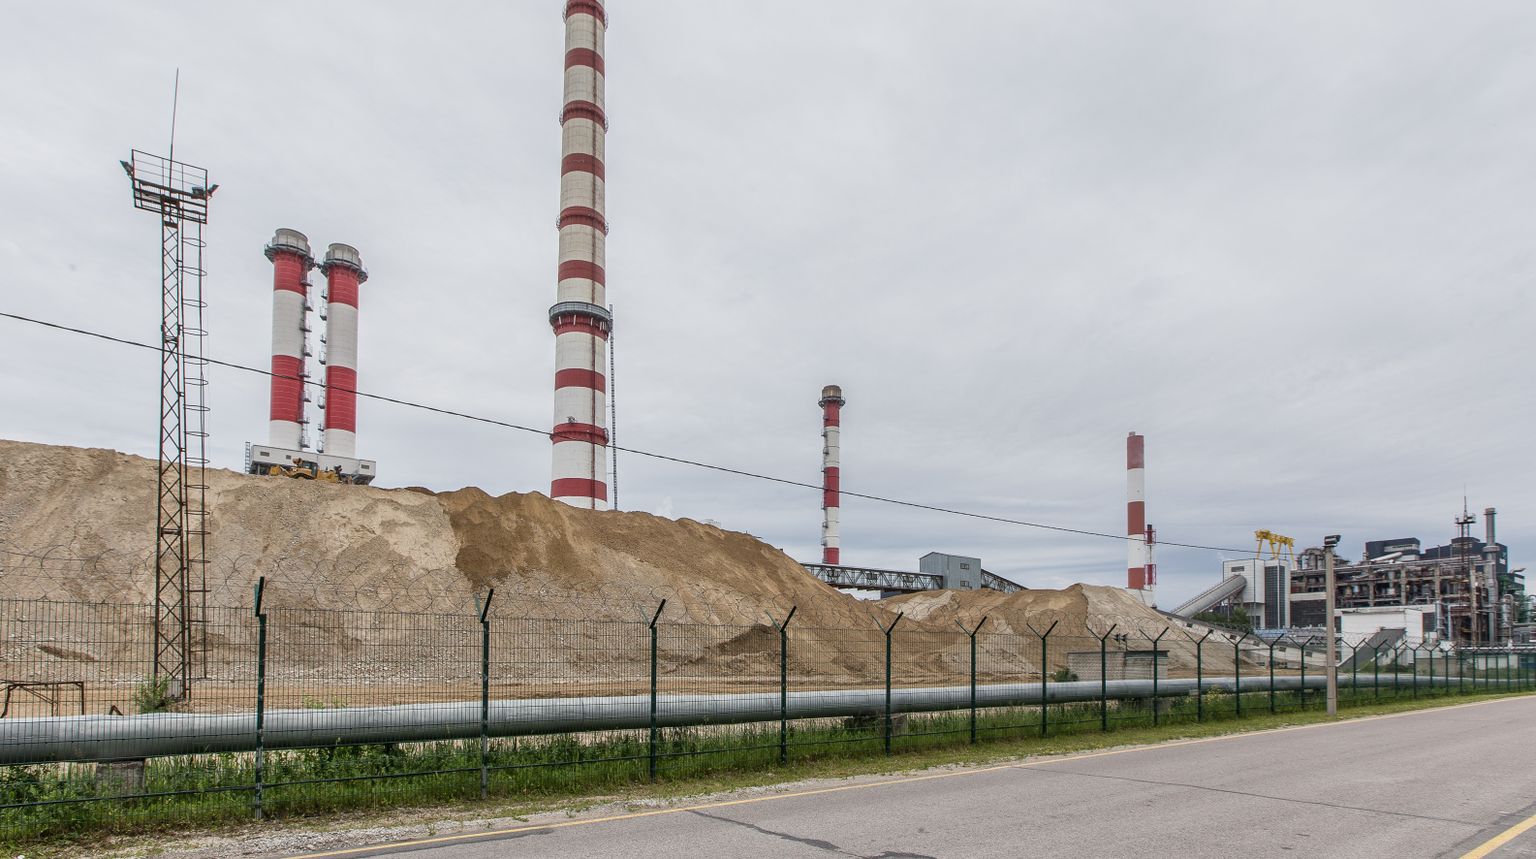 Производить энергию из сланца Эстония  будет  до тех пор, пока не найдем управляемые альтернативы, обеспечивающие энергобезопасность и надежность снабжения, а также щадящие окружающую среду решения для поддержания частоты в электросети.